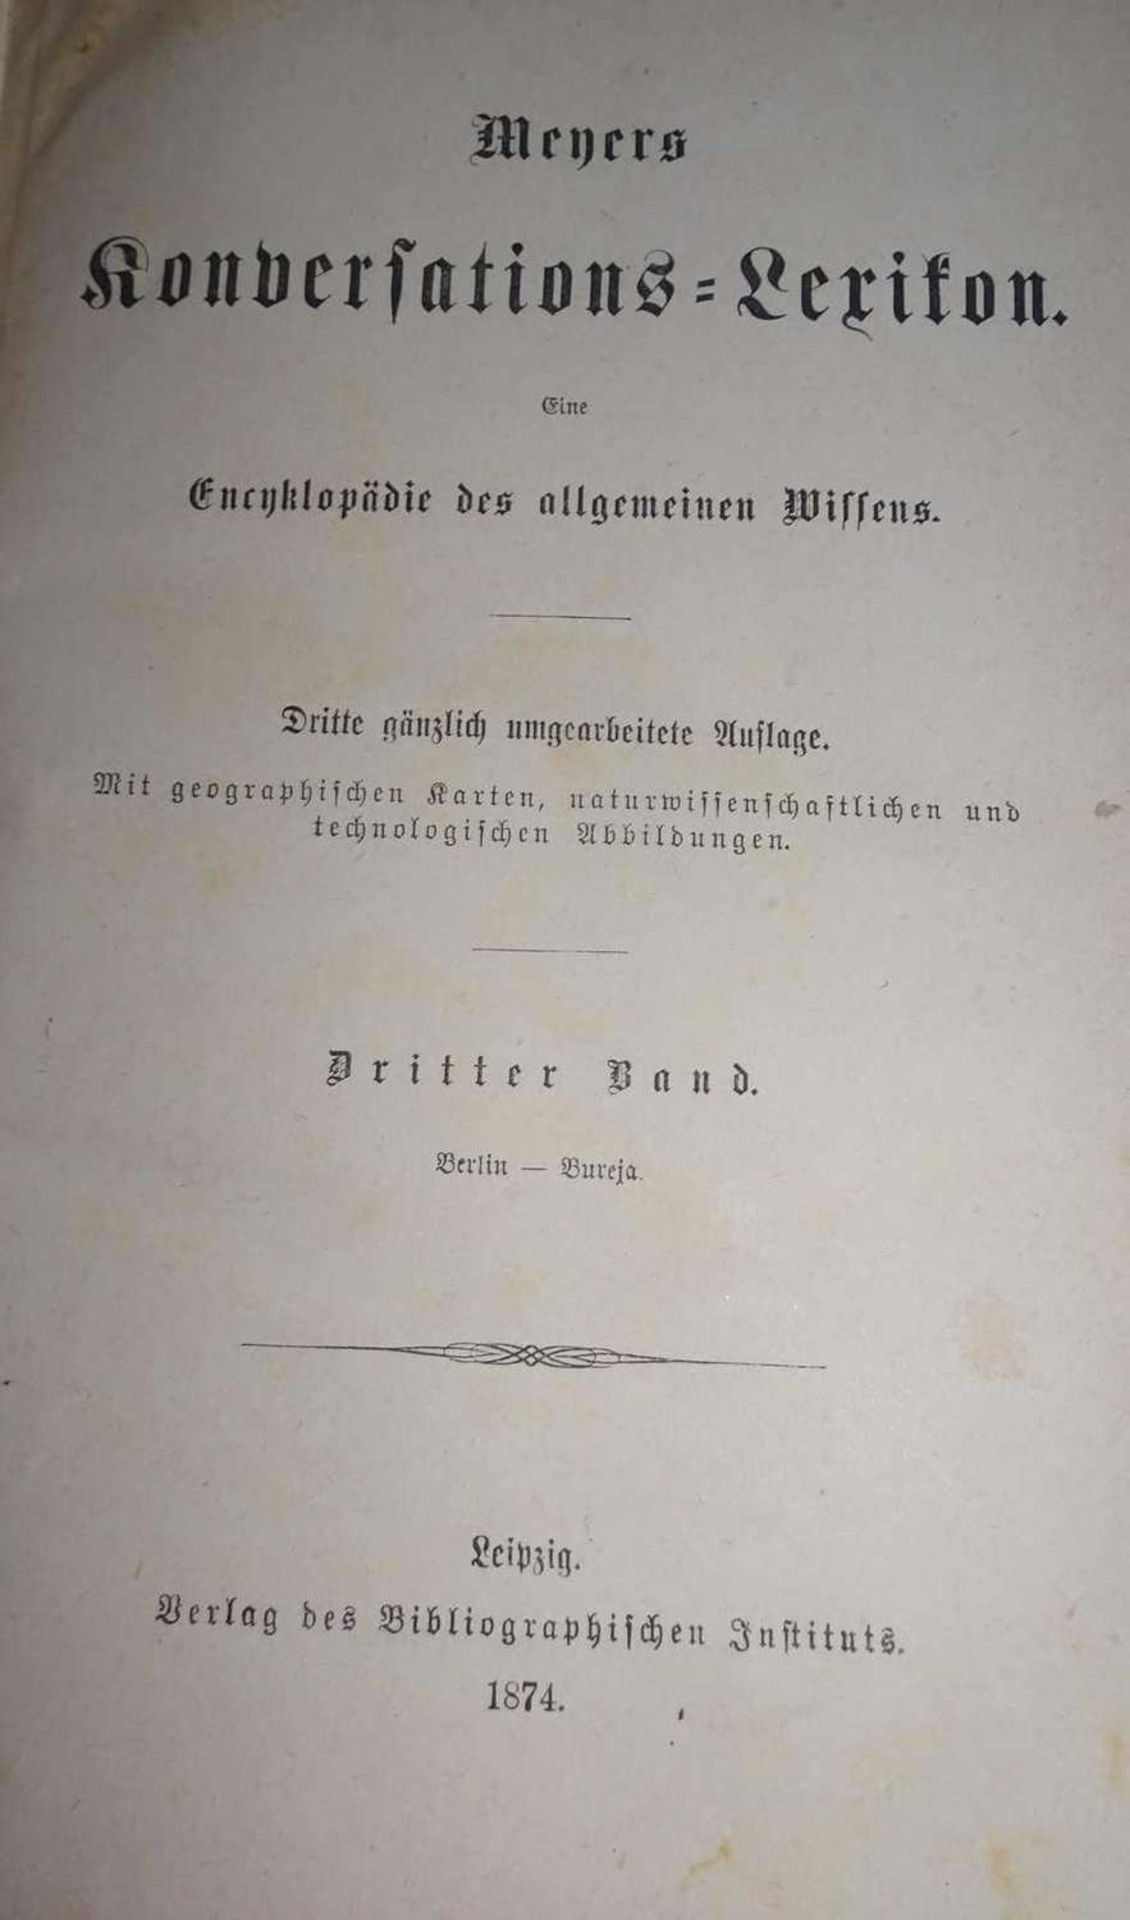 Meyer´s Konversations Lexikon, Band 1-16, Leipzig, Verlag des Bibliographischen Instituts 1874 - Image 2 of 2